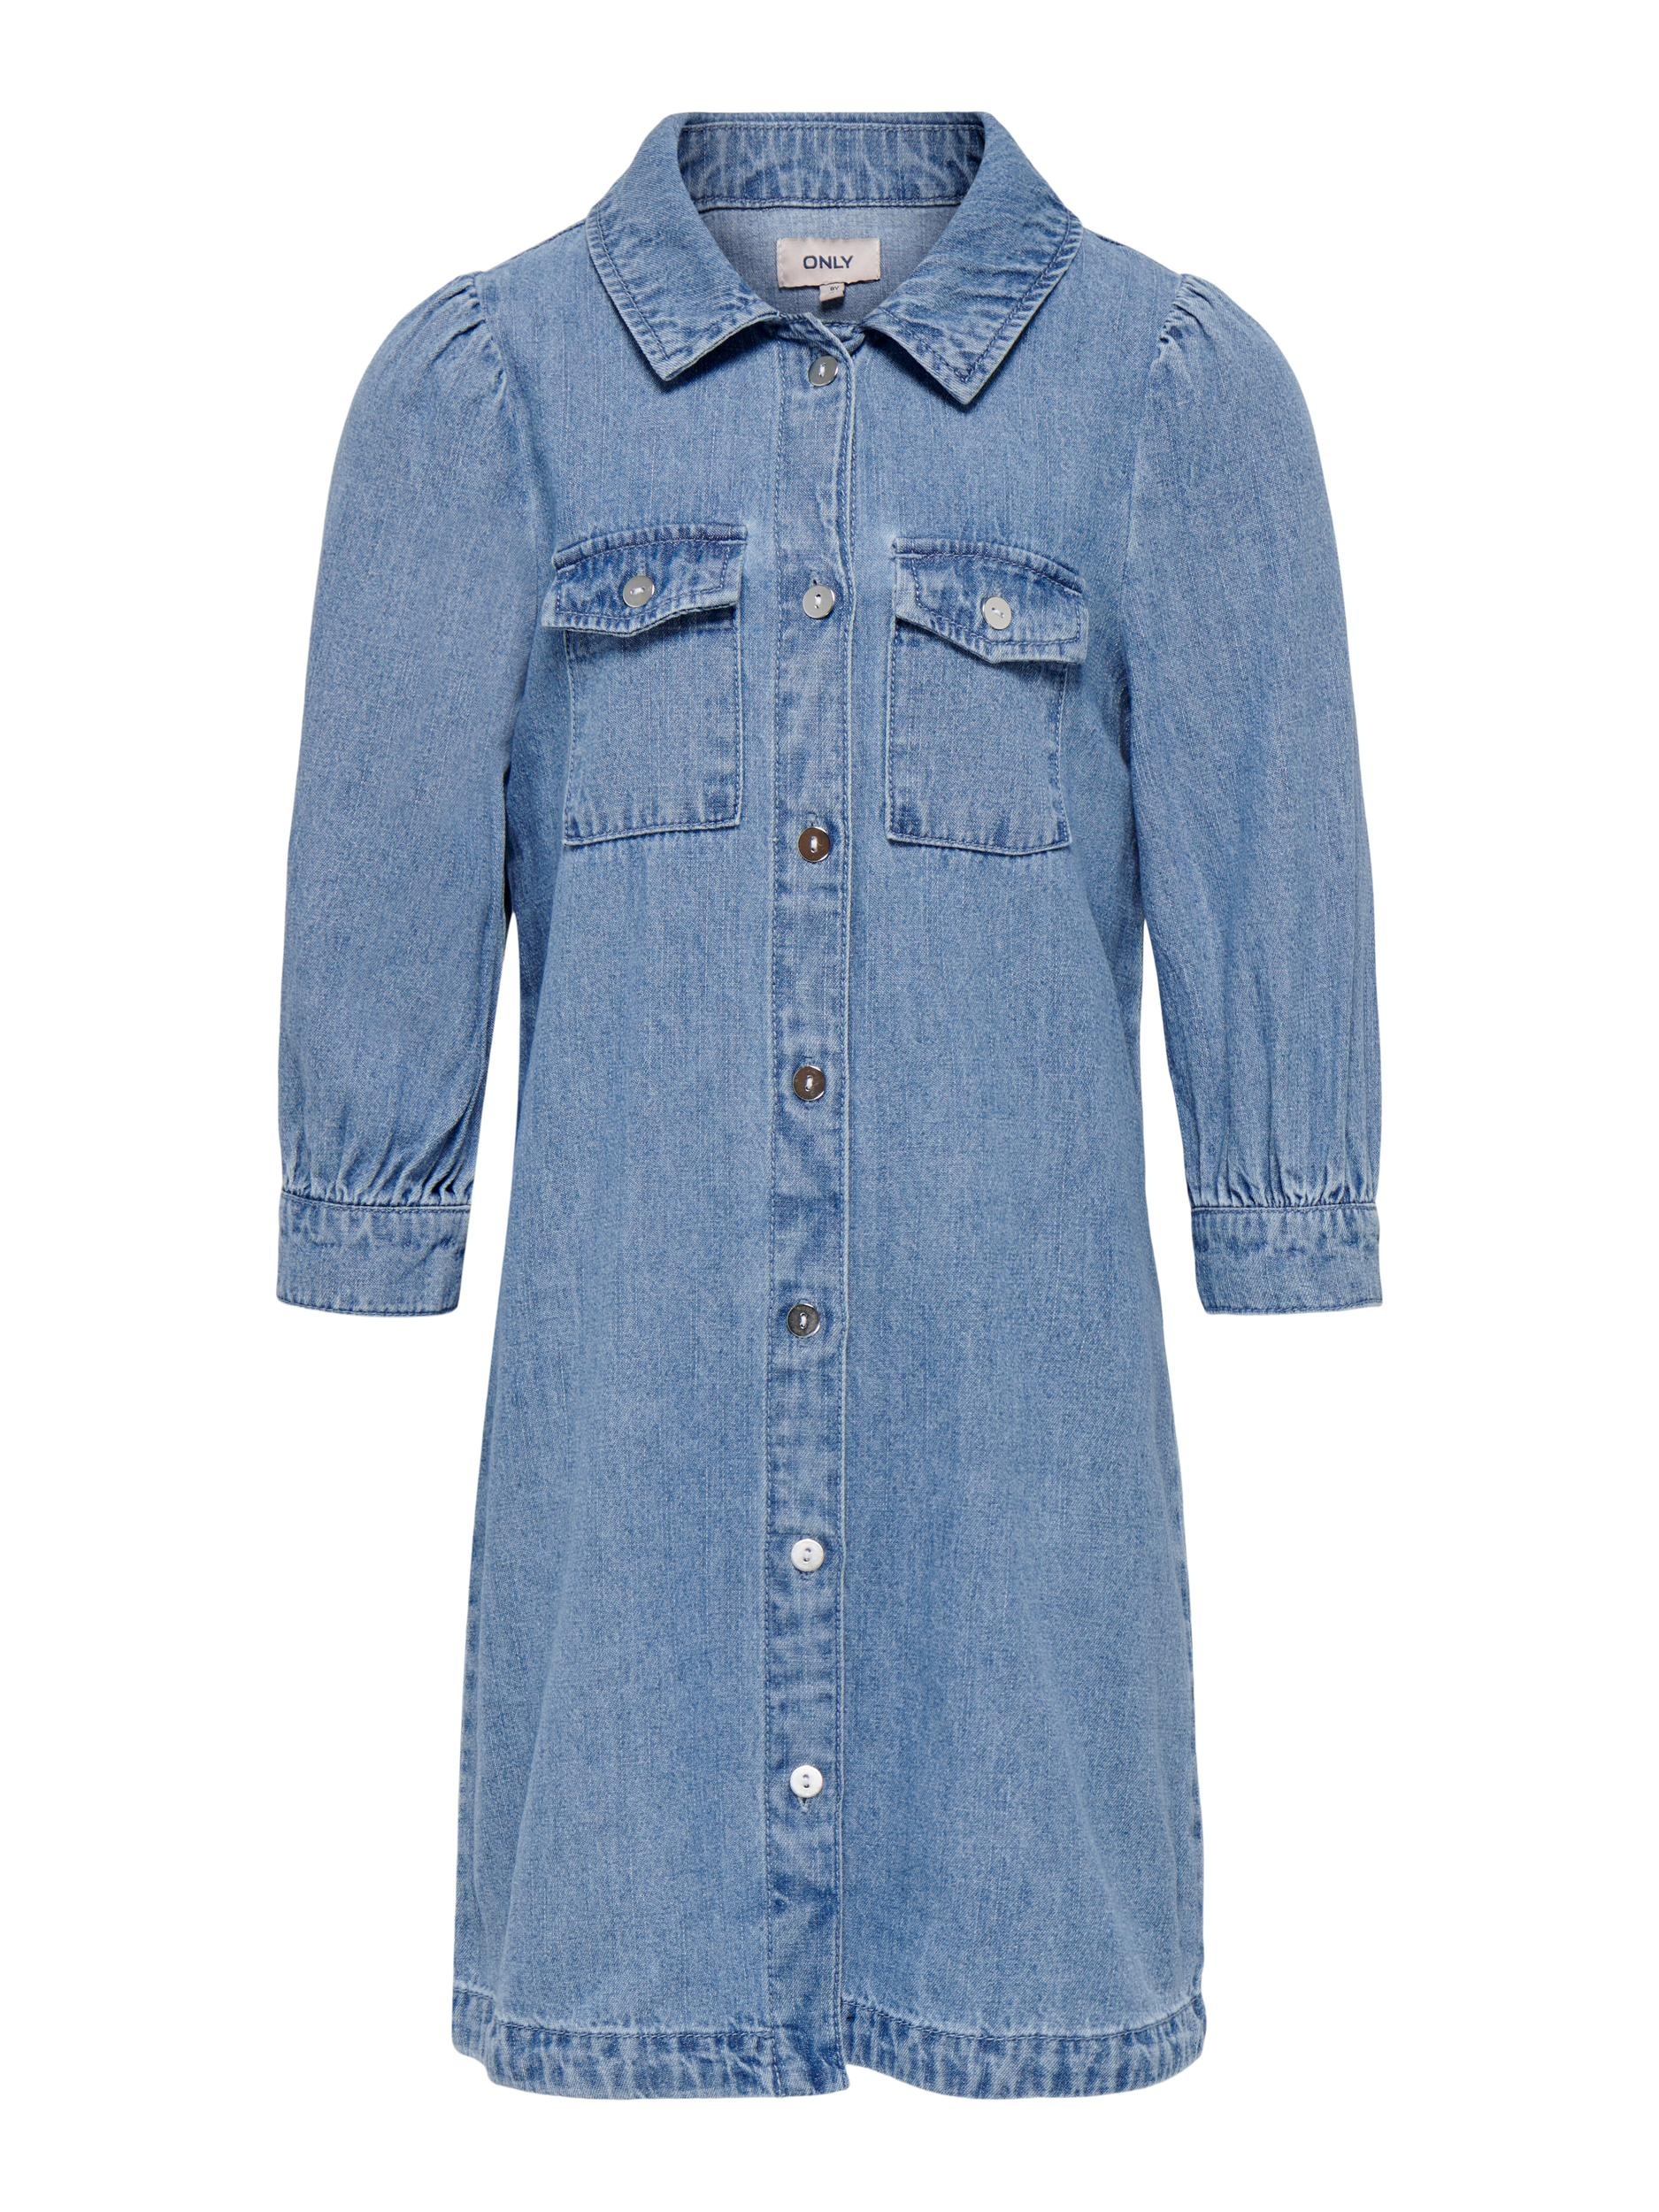 KIDS ONLY Jeanskleid »KOGFELICA DNM DRESS YOKBOX« online bestellen | BAUR | Jeanskleider